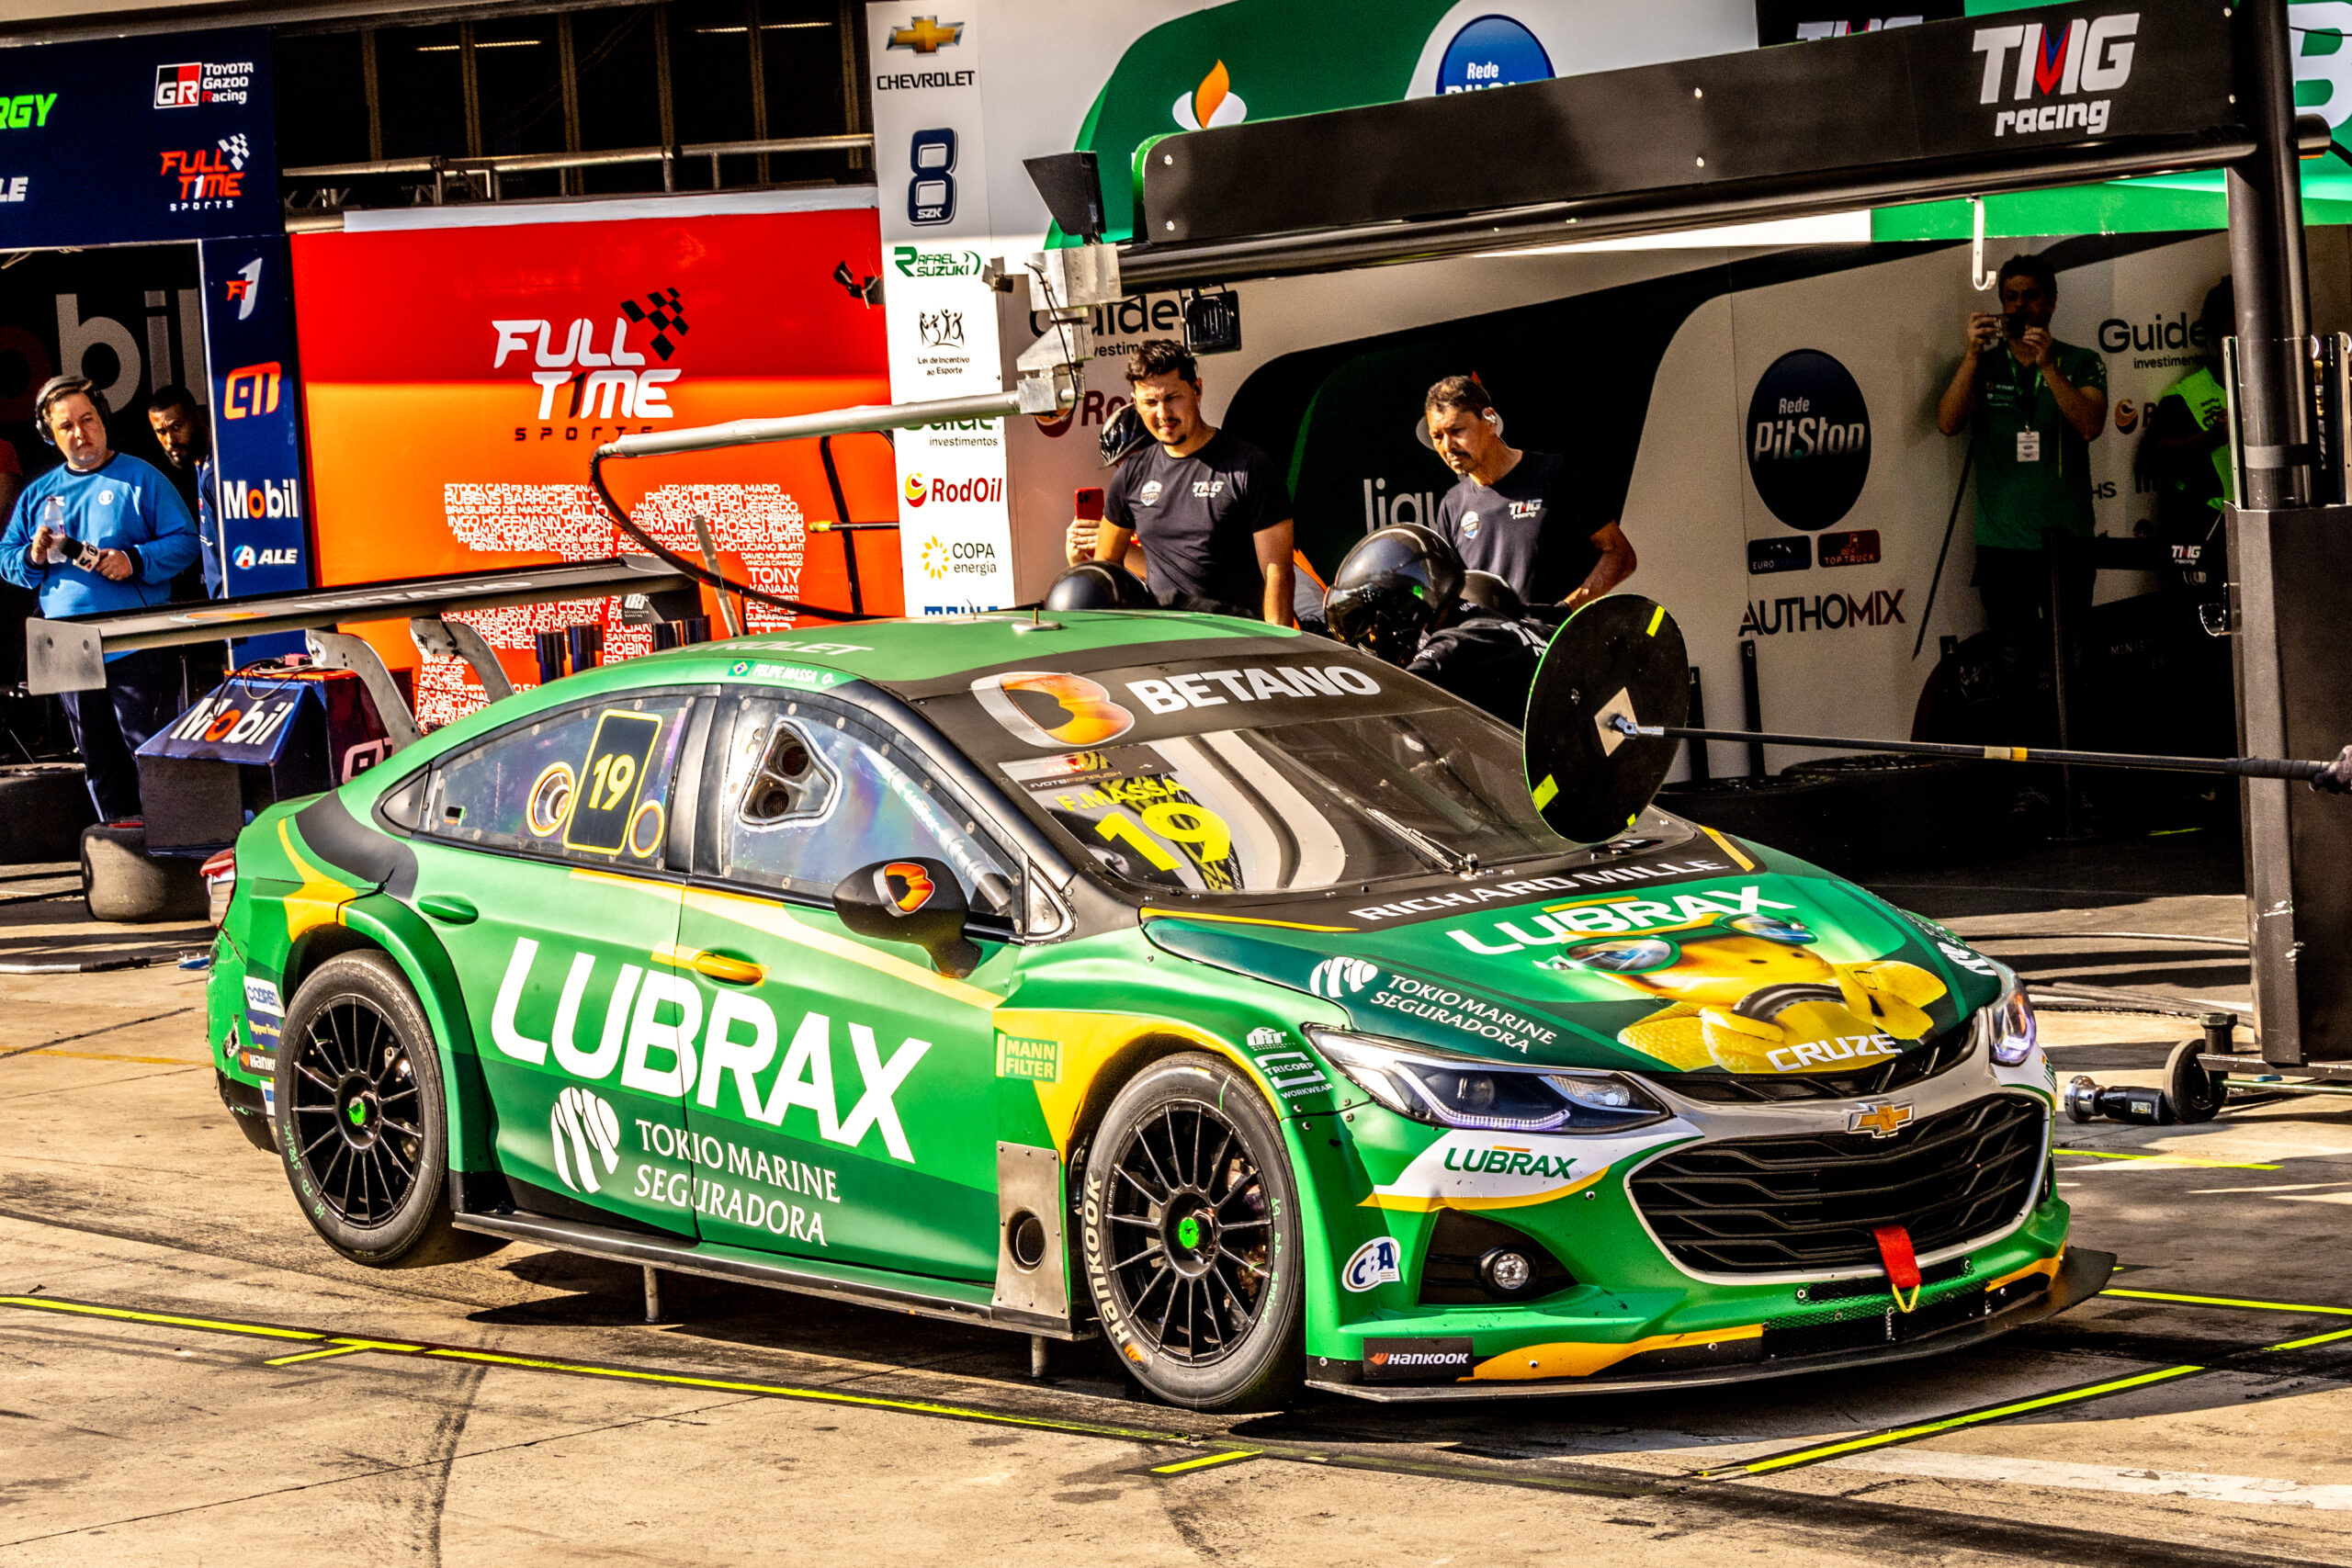 Time Lubrax sustenta liderança e vice na Stock Car e tem torcida especial em Interlagos